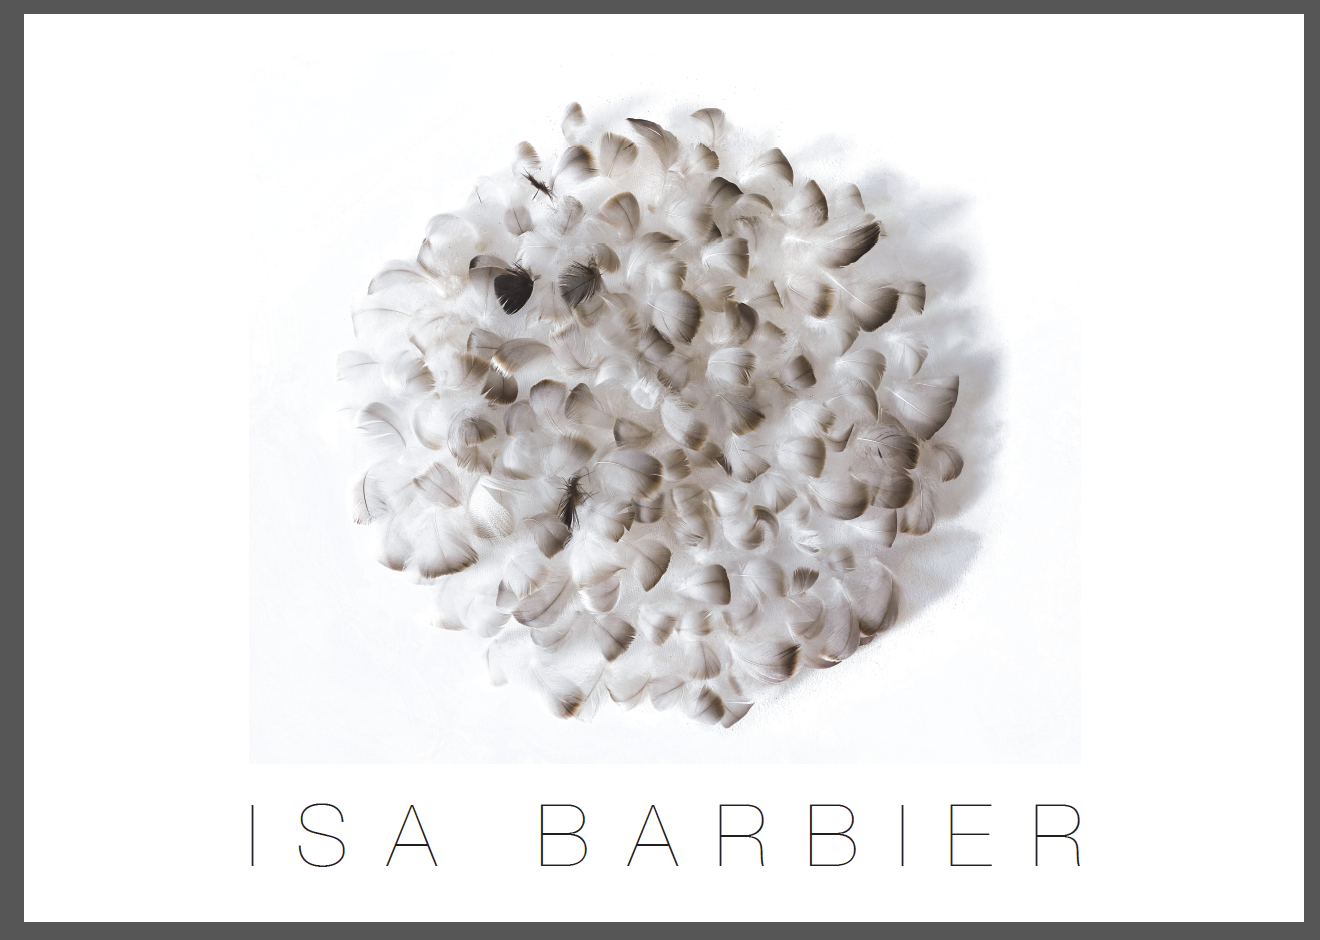 Isa barbier Disque, 2017, plumes d'oie sur tuile